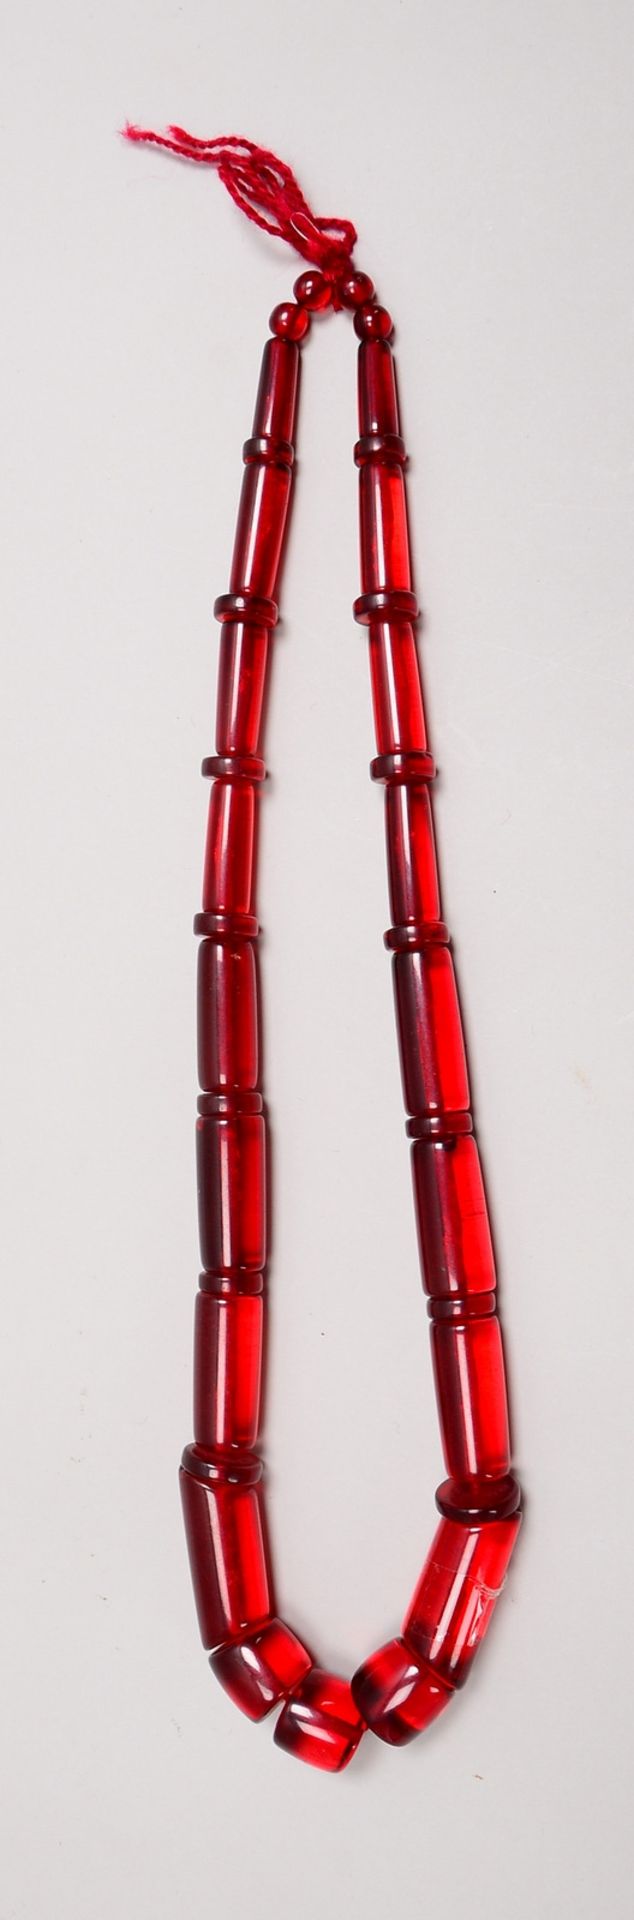 Halskette (Indien), Bakelit-Glieder/verlaufend; Länge 80 cm